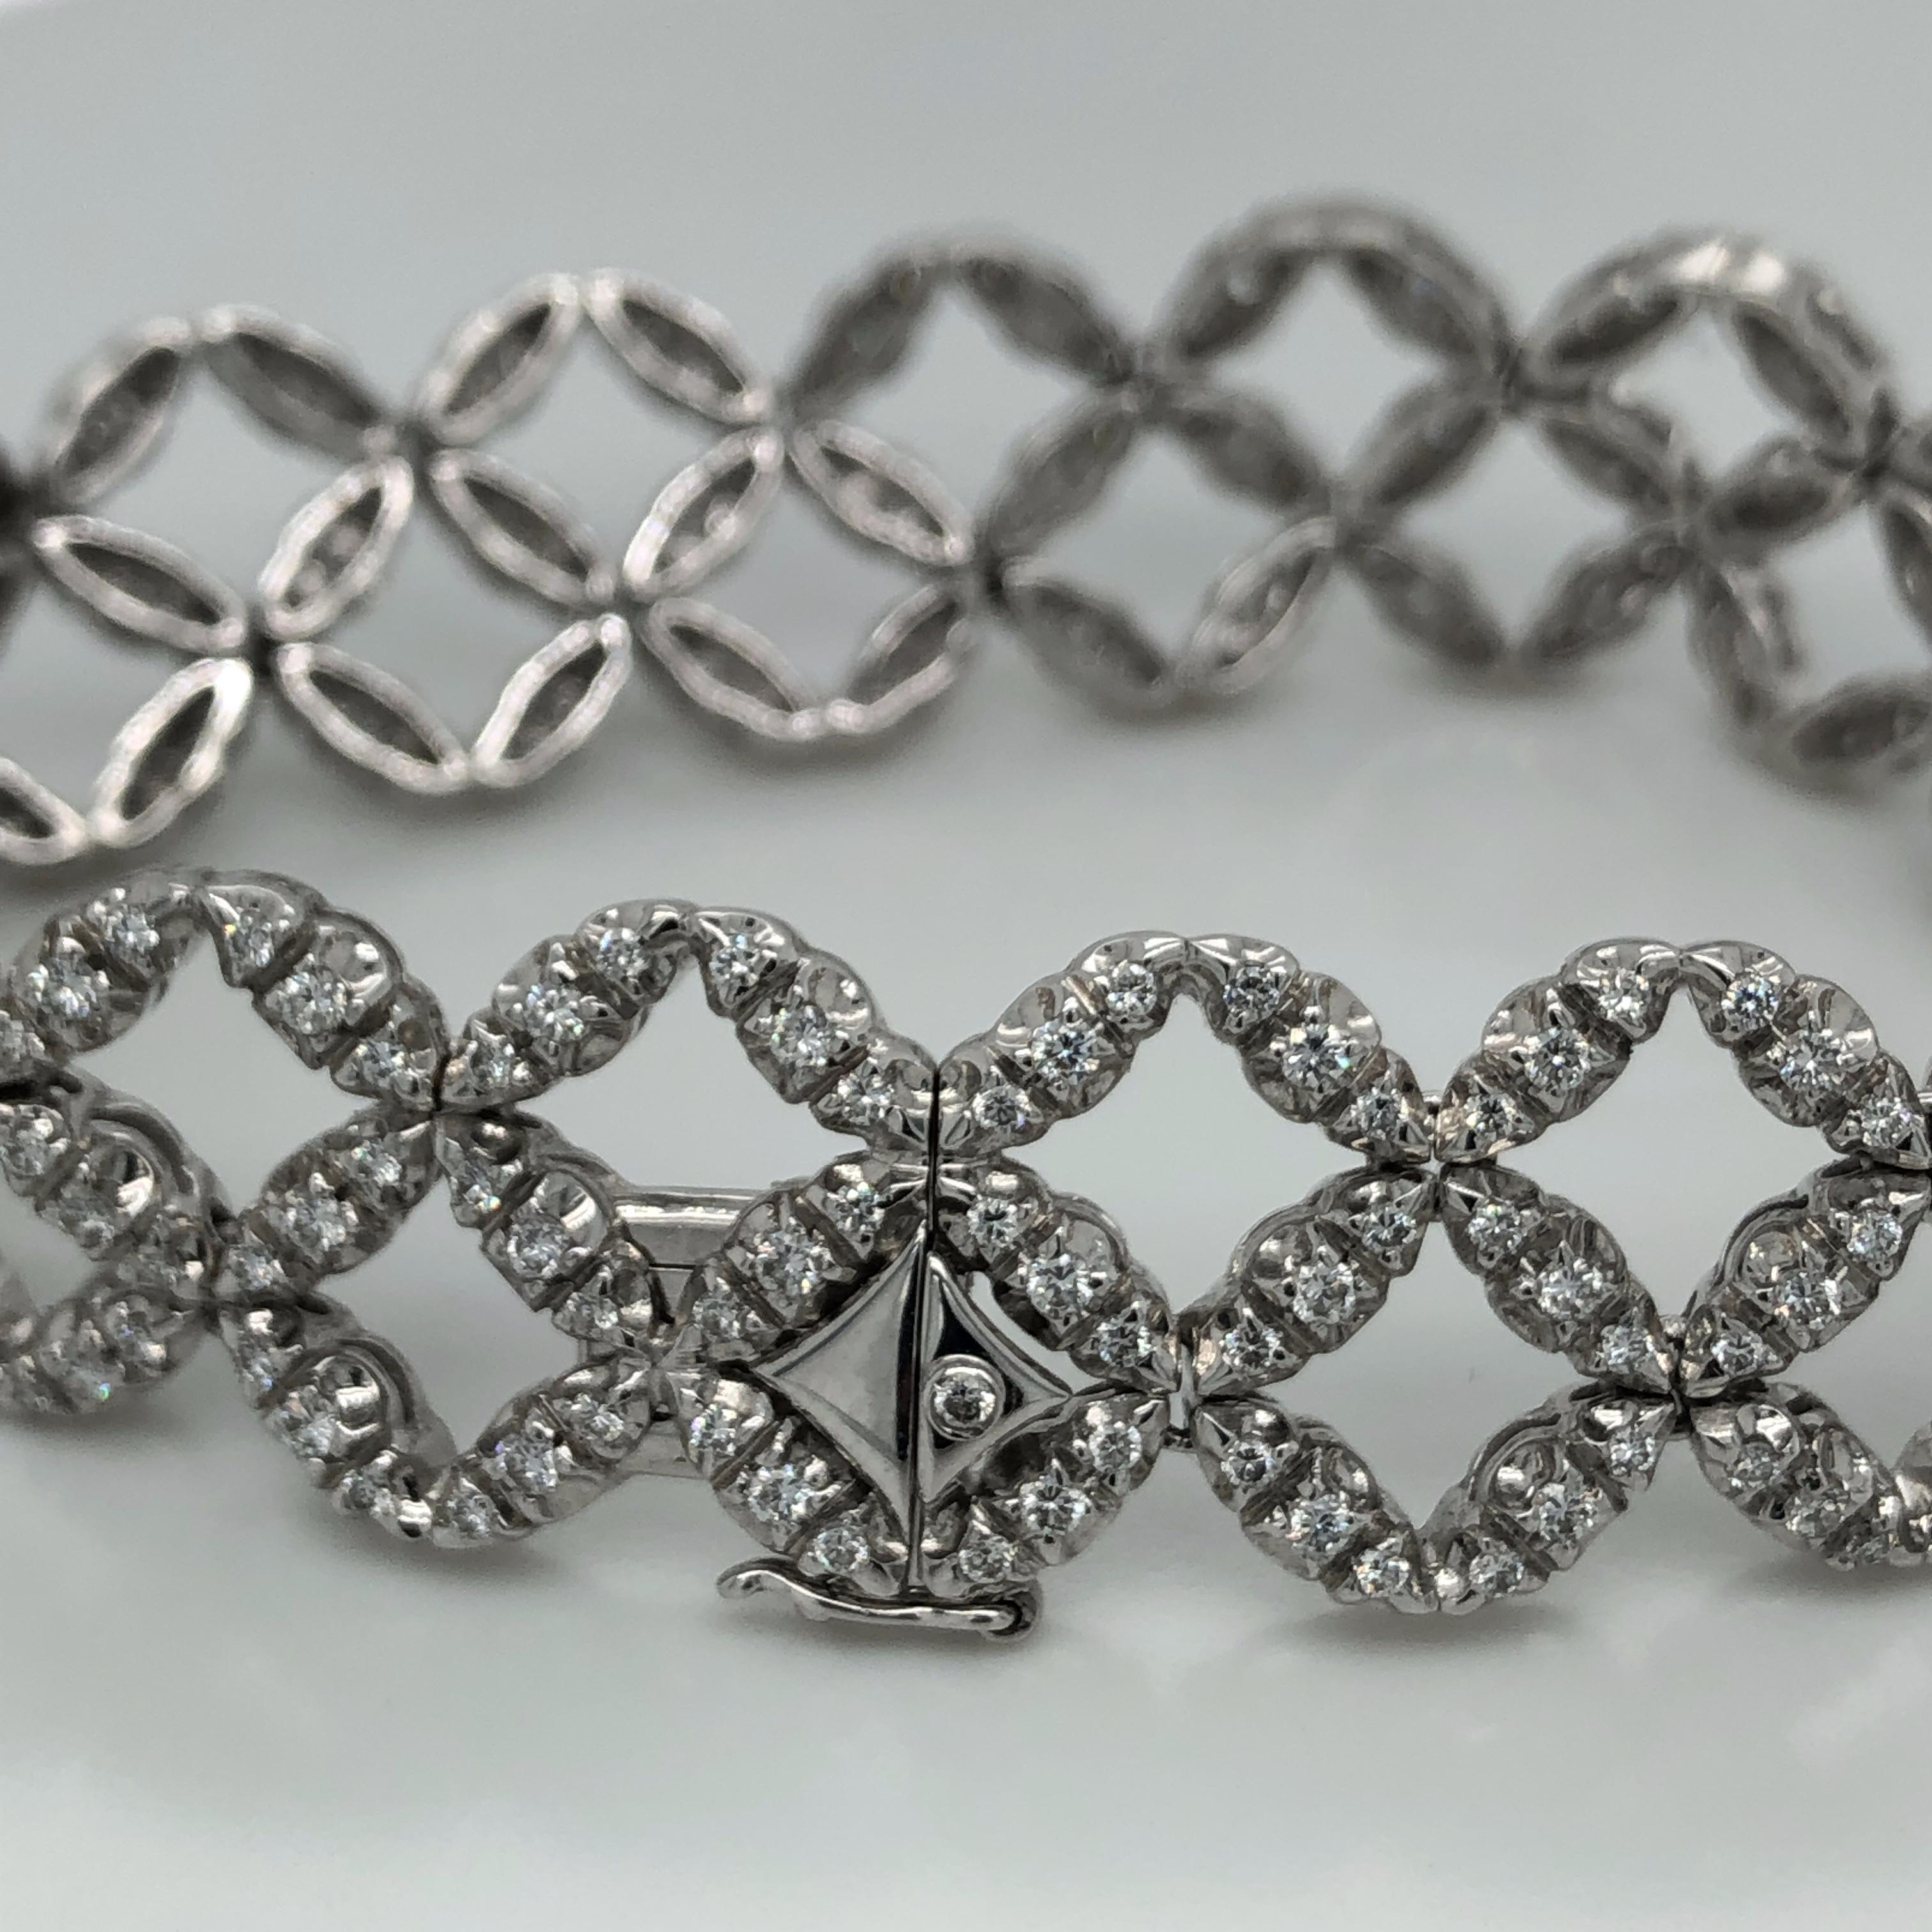 Bracelet de diamants Salvini en or blanc 18 carats. Total des diamants ronds de 3 carats. Tampon Salvini 750 